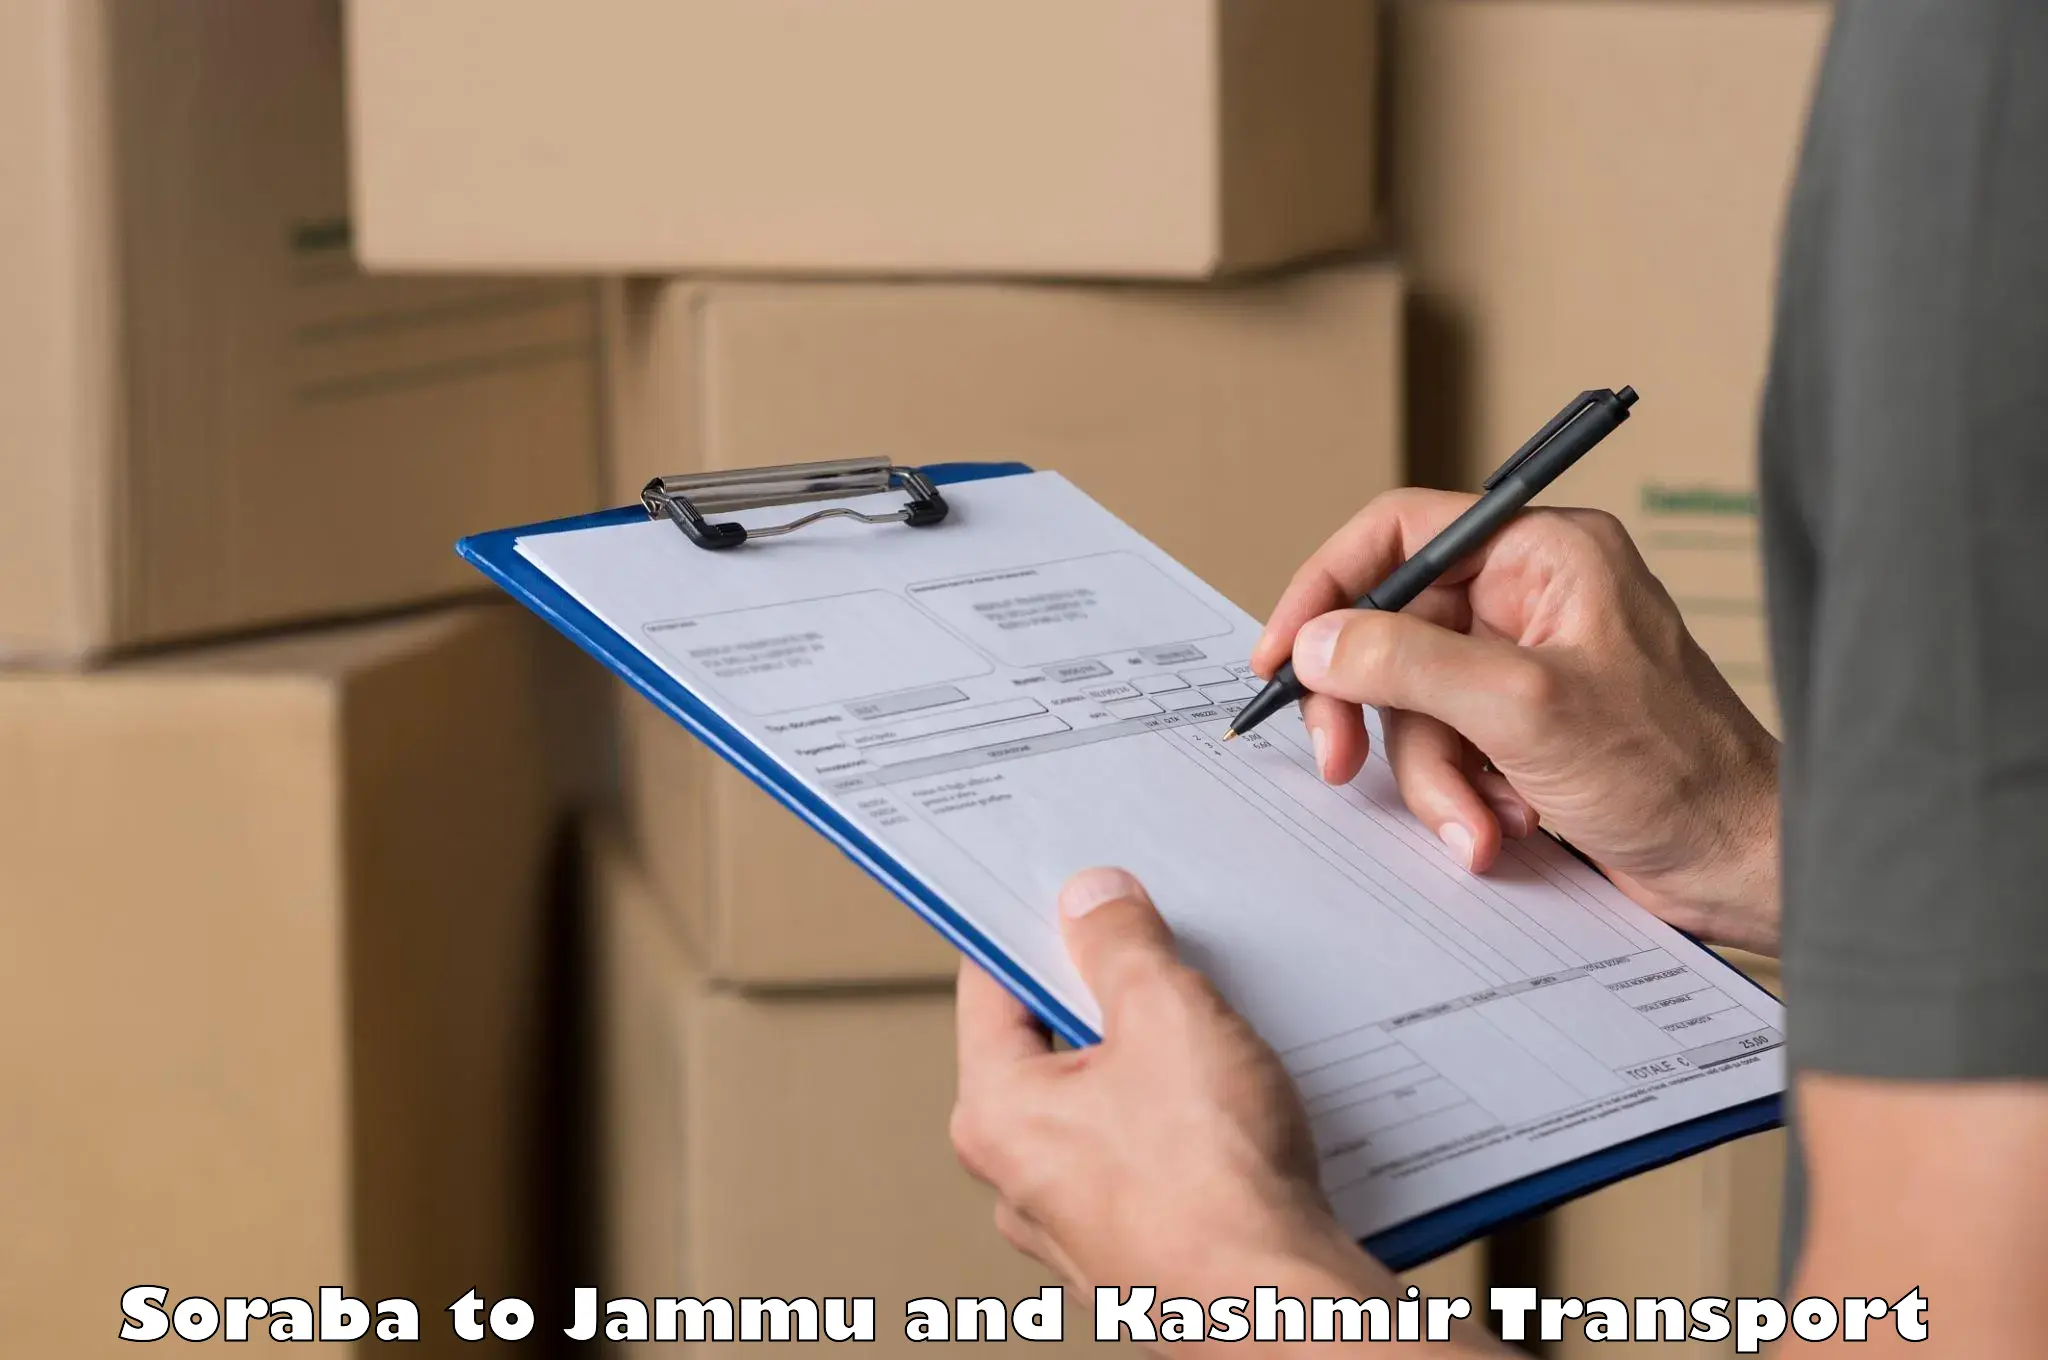 Parcel transport services Soraba to Jammu and Kashmir